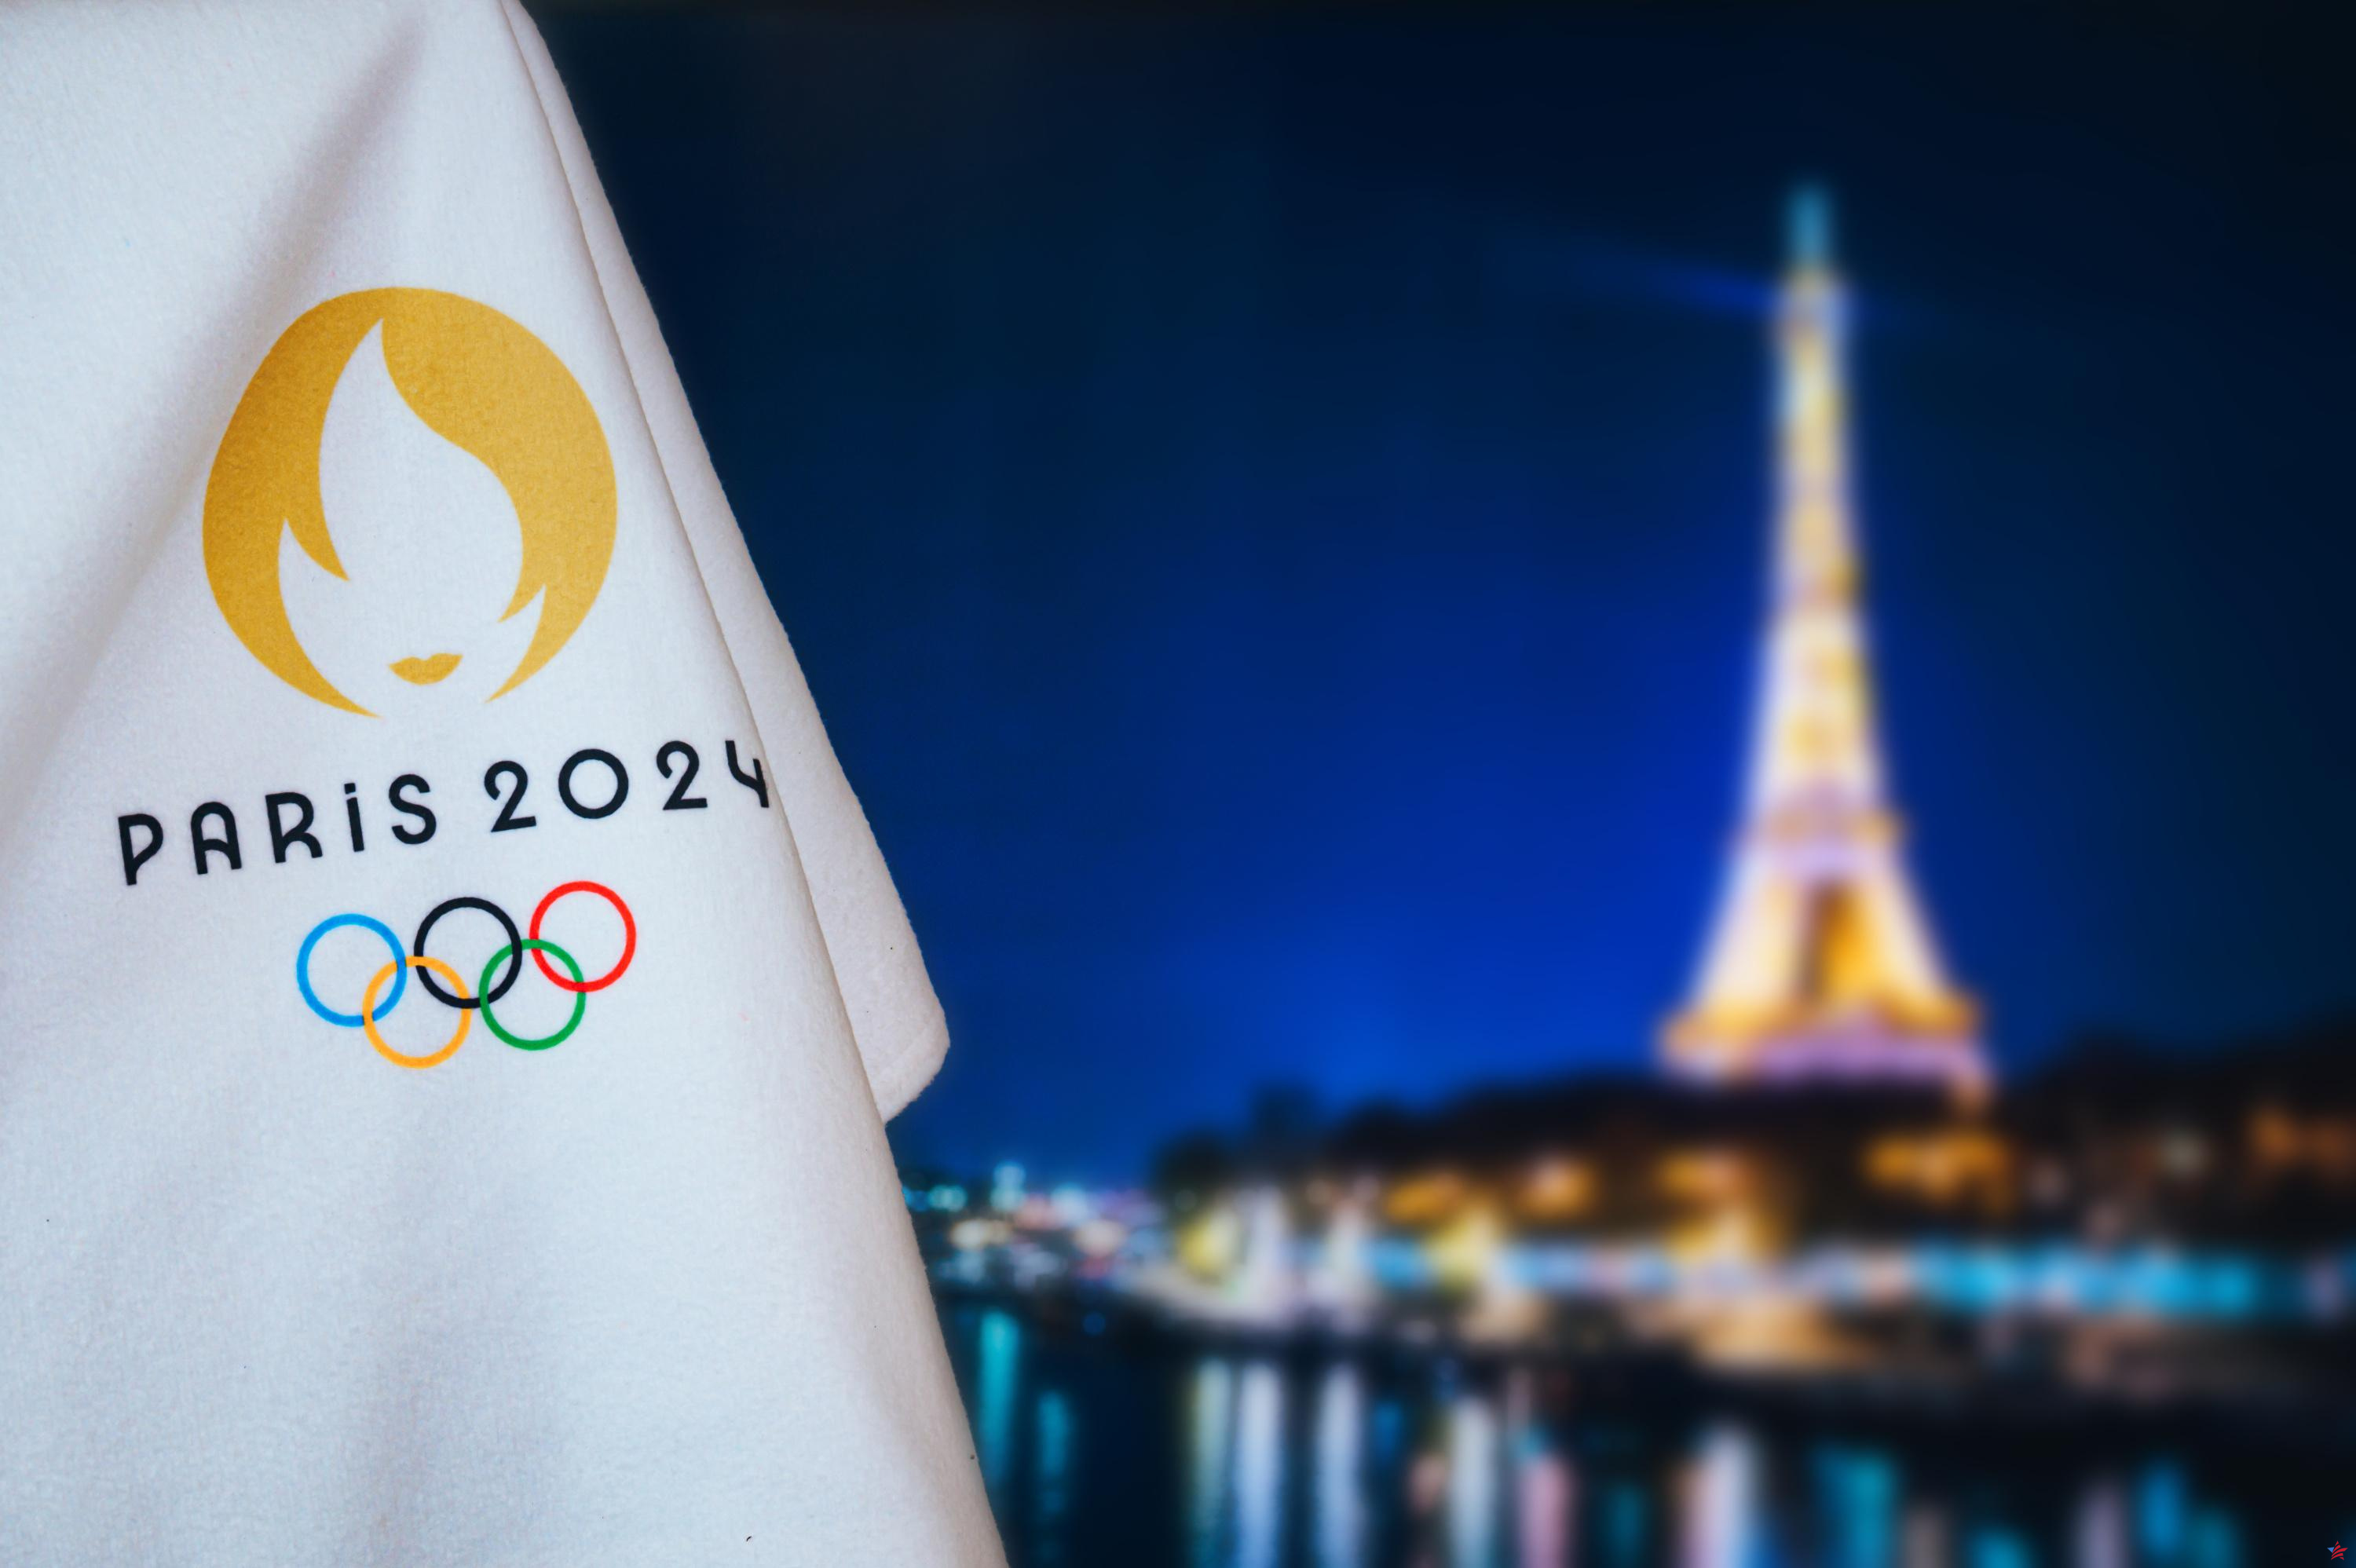 “Lo importante es teletrabajar”: se anima a los empleados de Île-de-France a quedarse en casa durante los Juegos Olímpicos de 2024